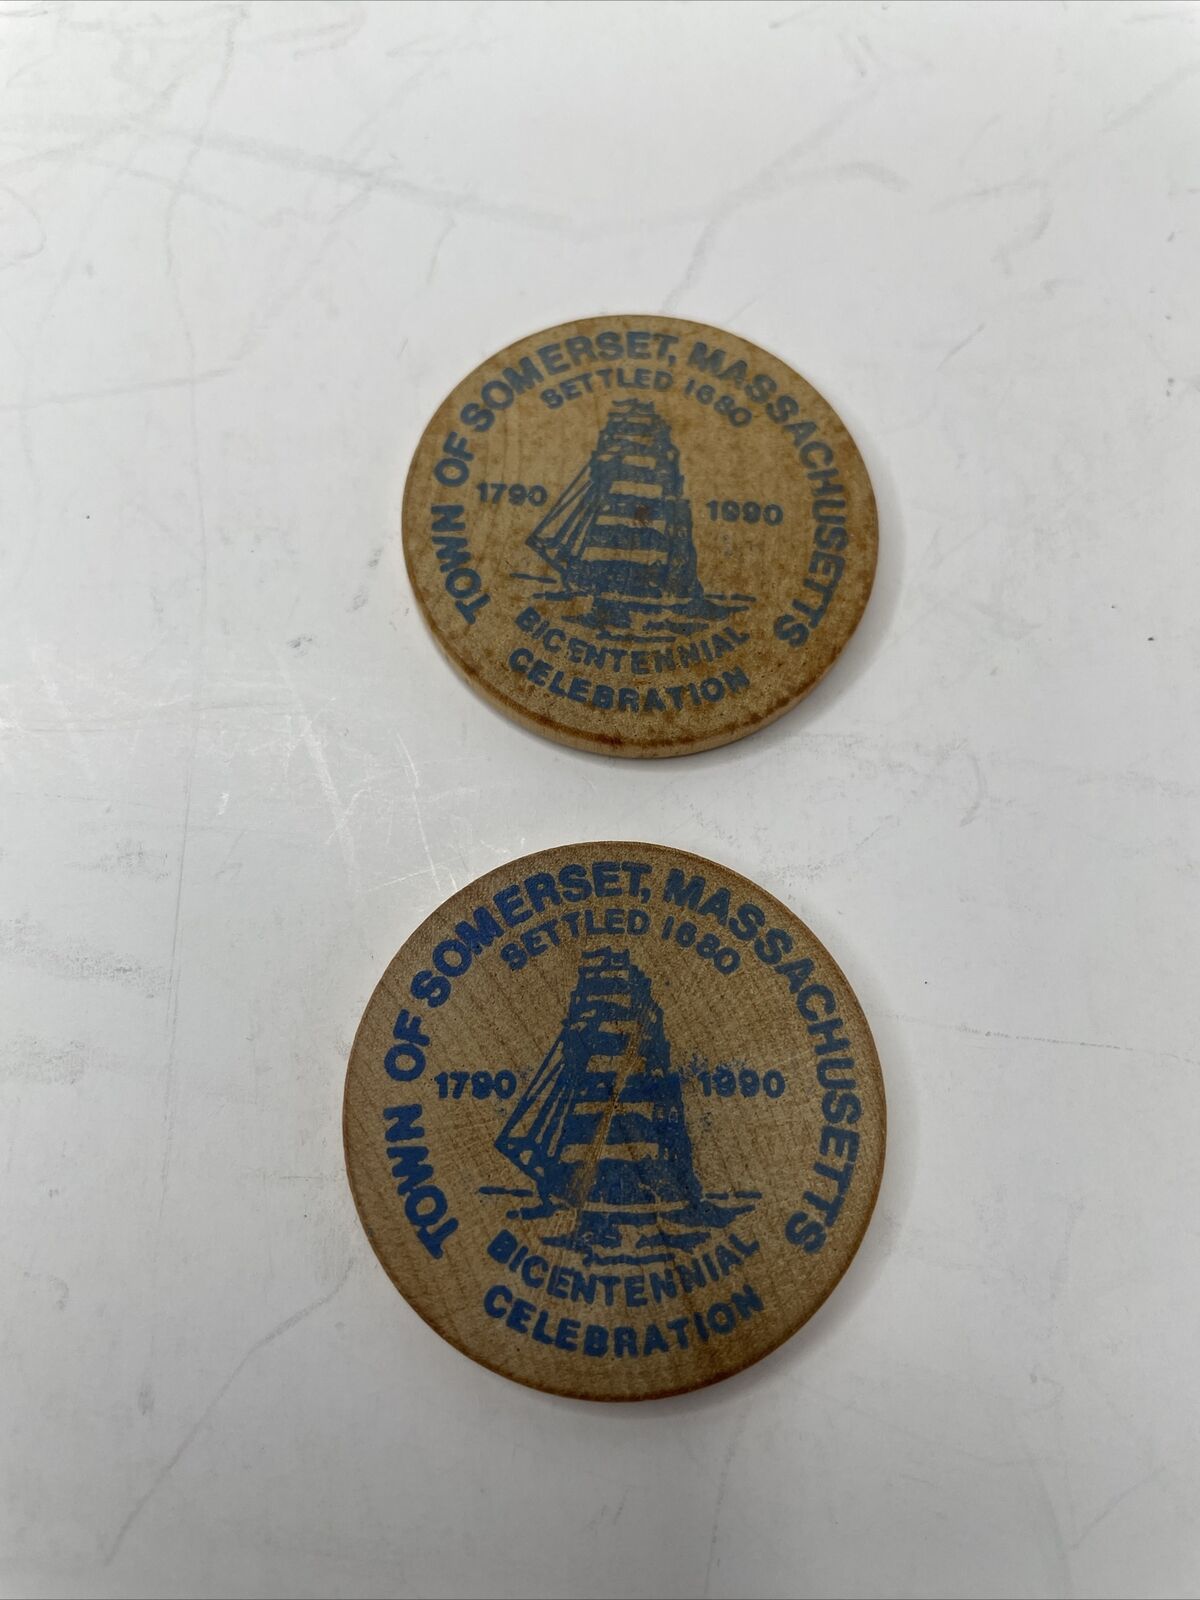 2 Somerset Massachusetts Bicentennial Celebration 1790-1990 Wooden Nickel